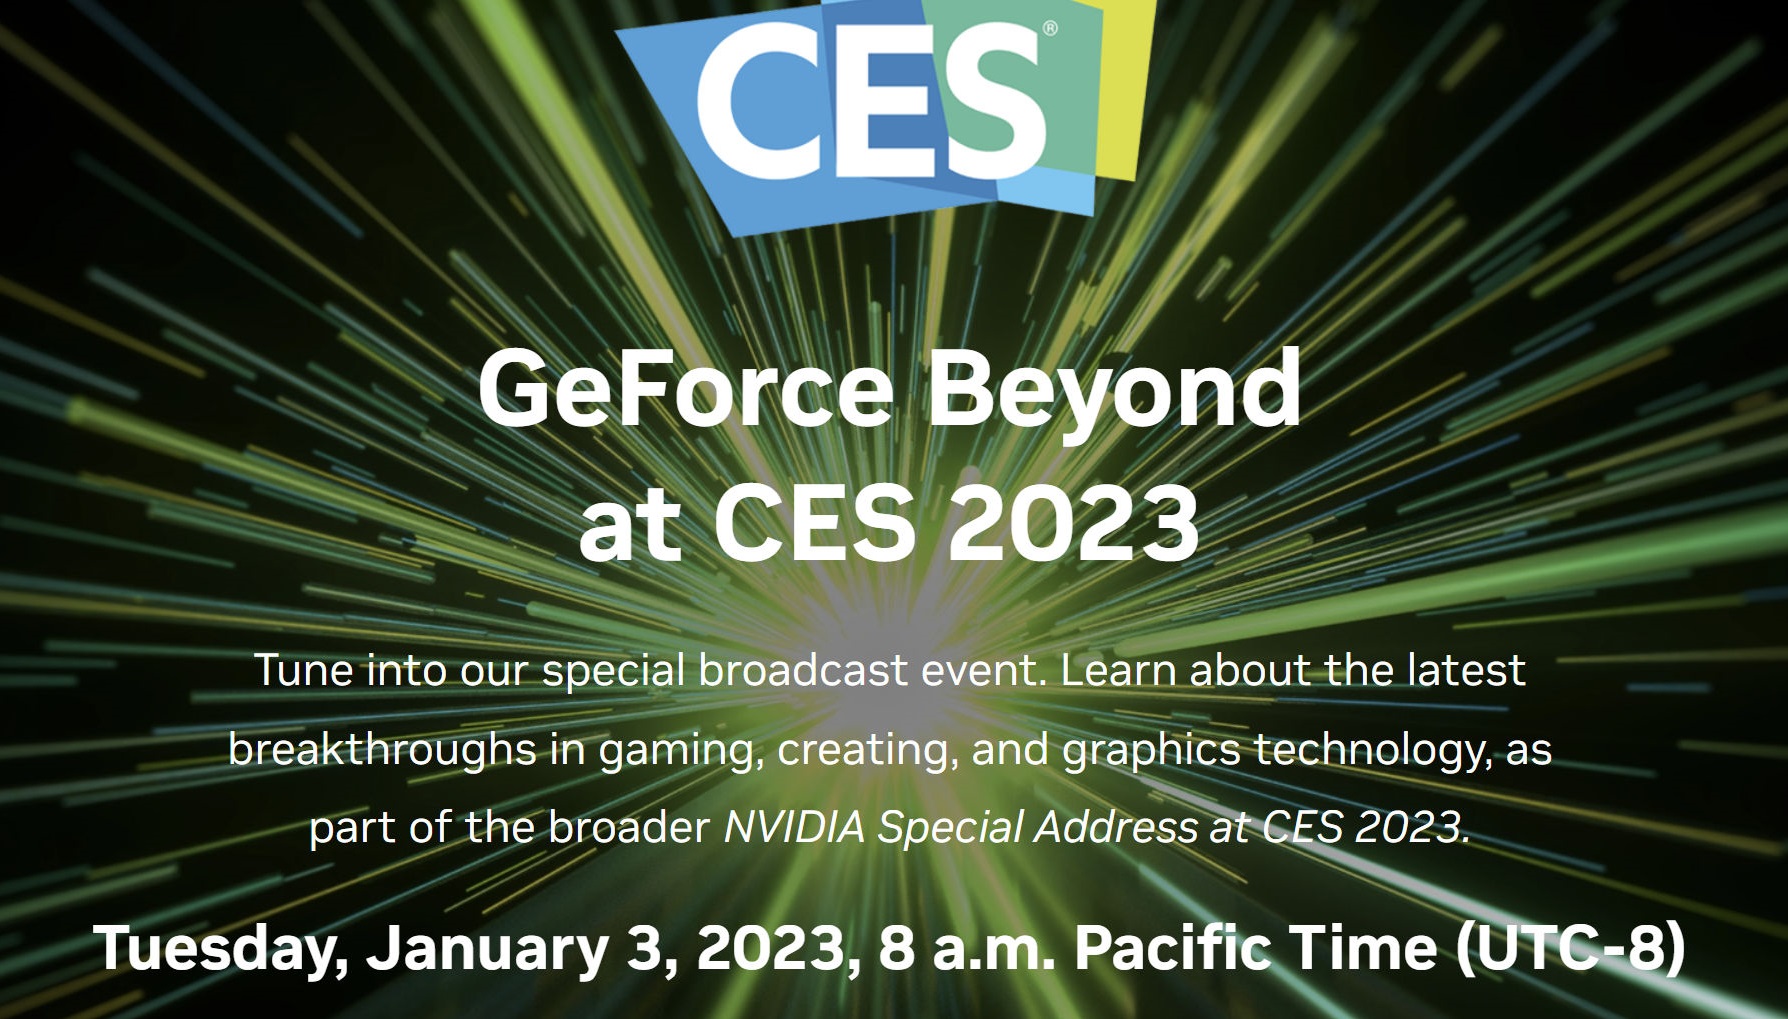 Η NVIDIA ανακοίνωσε το event GeForce Beyond στην έκθεση CES 2023